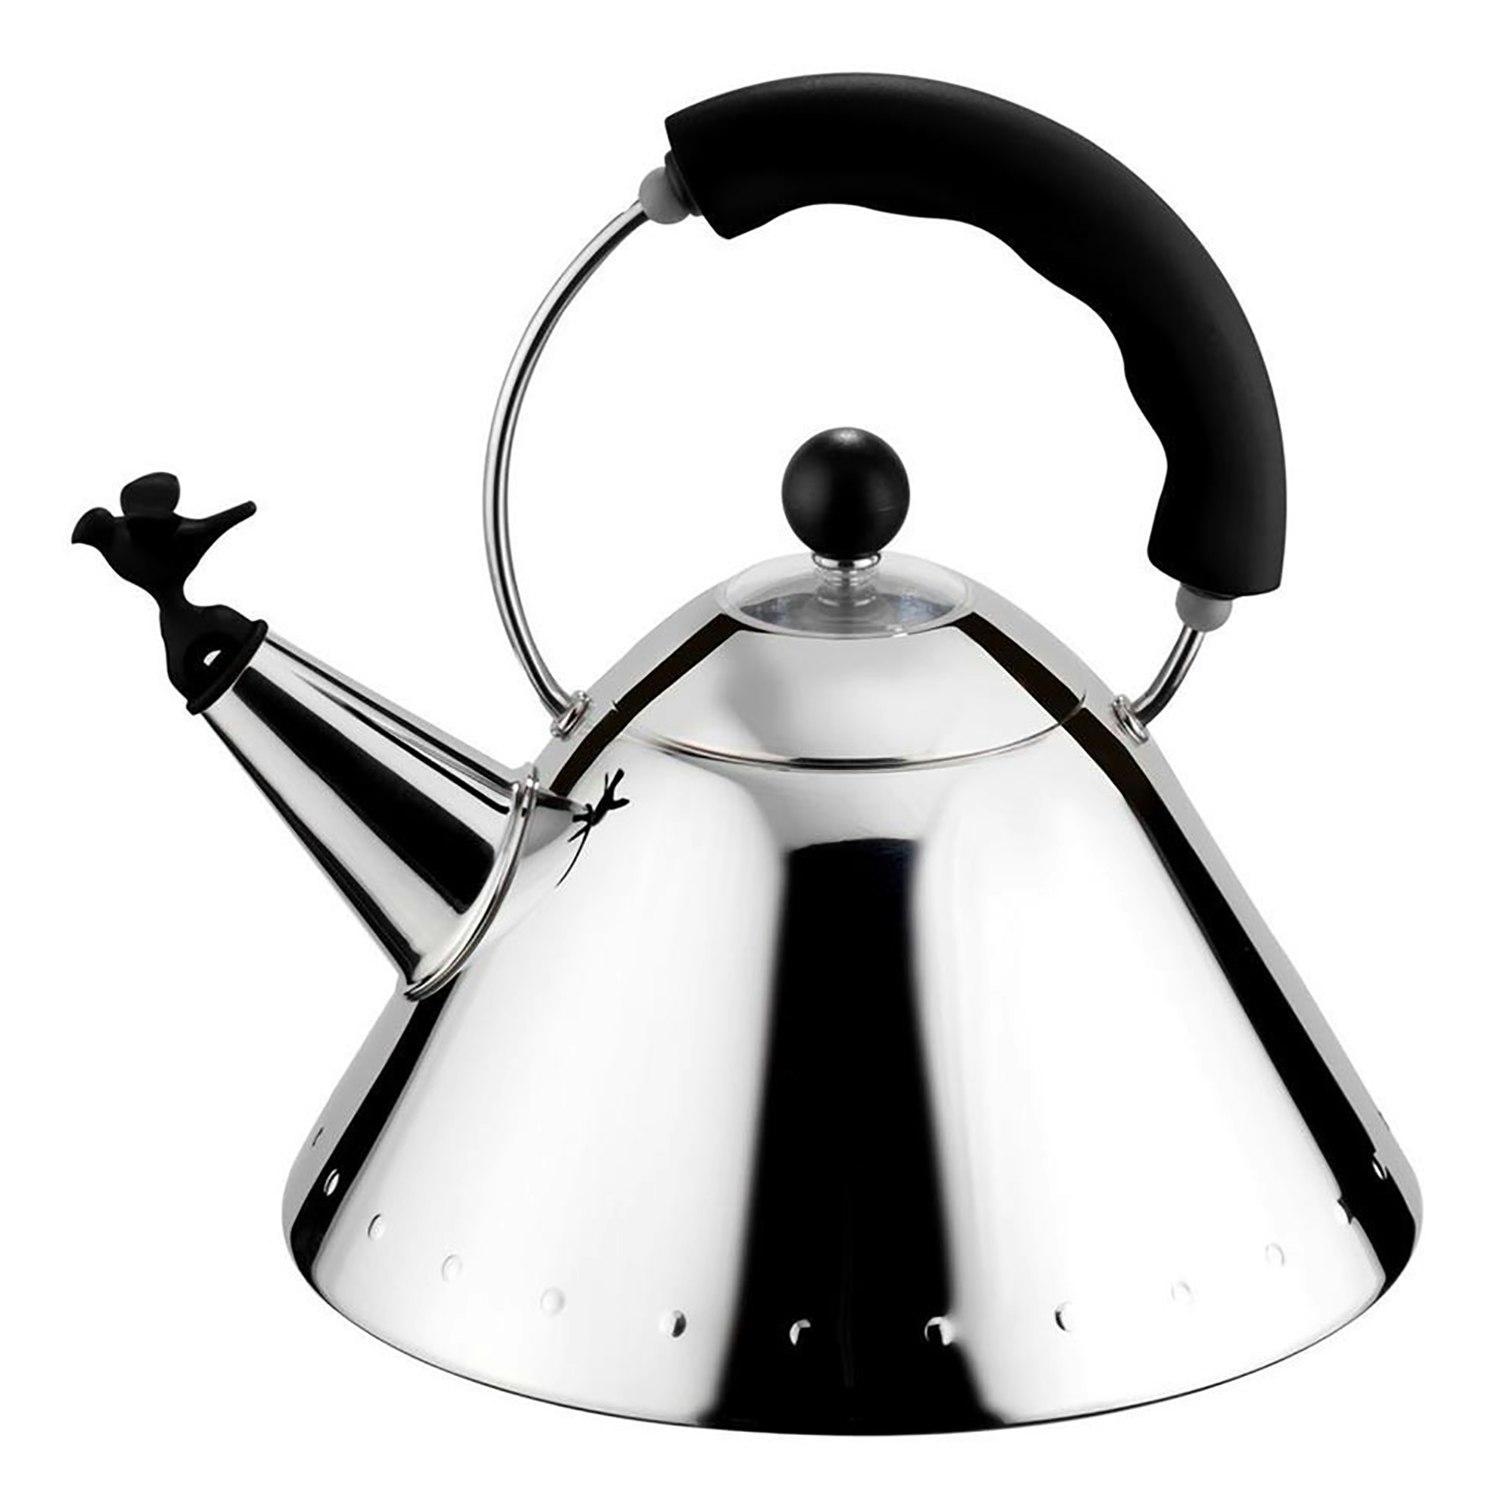 https://royaldesign.com/image/2/alessi-kettle-2-l-5